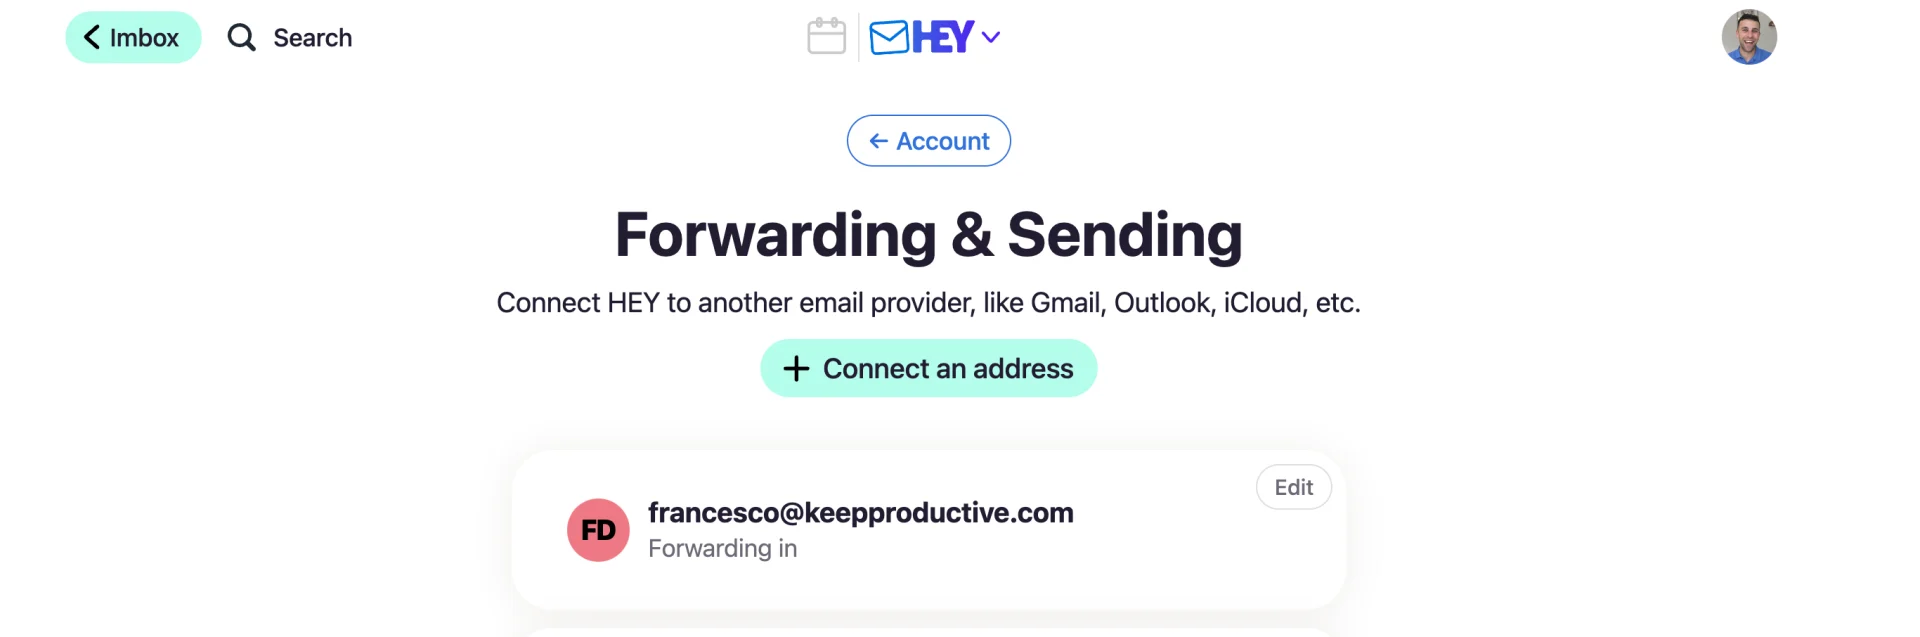 HEY.com email forwarding, setup